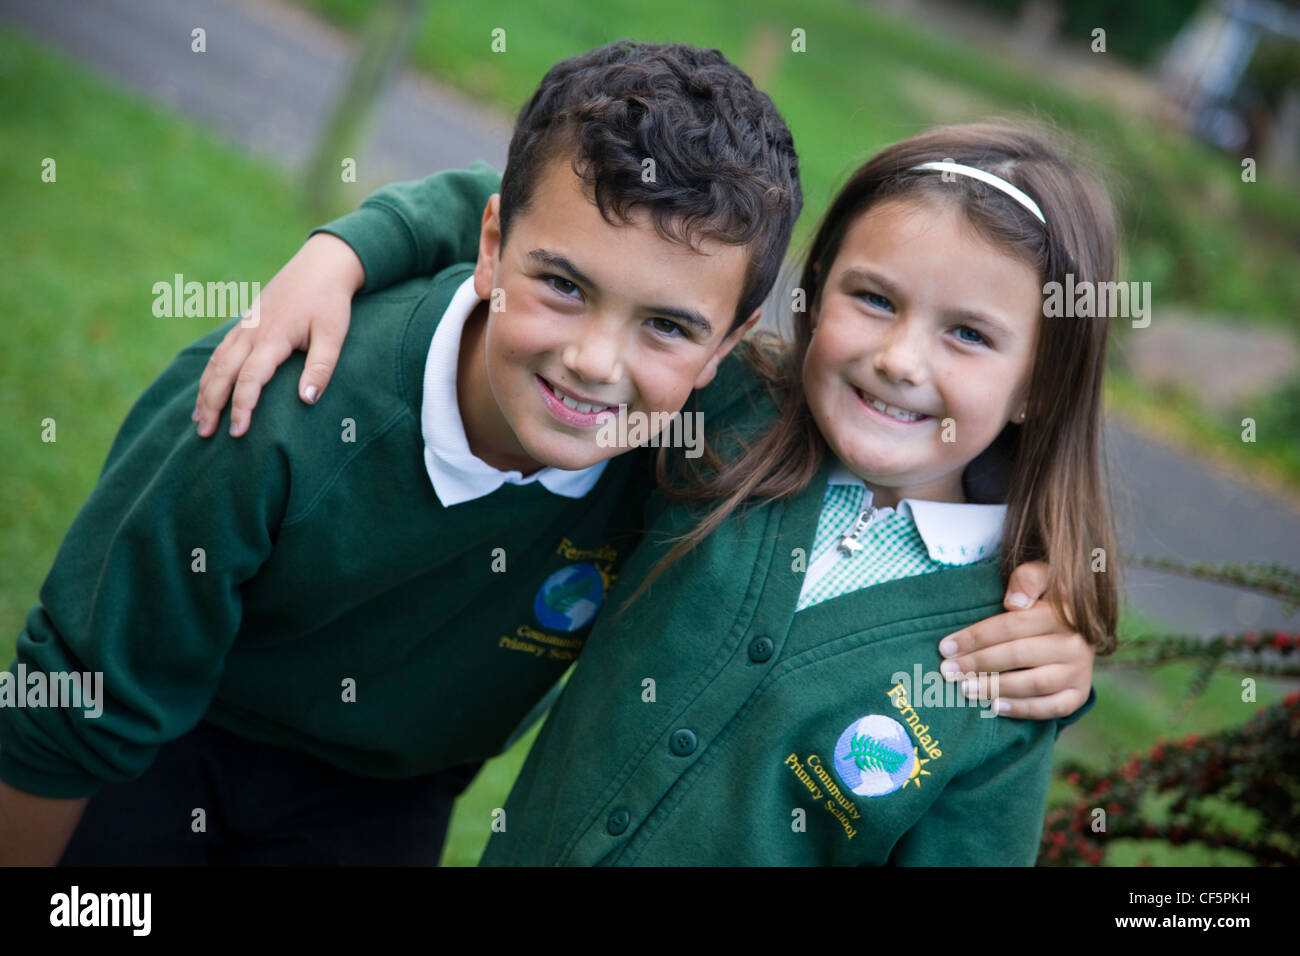 Schoolboy and schoolgirl in school uniform Stock Photo